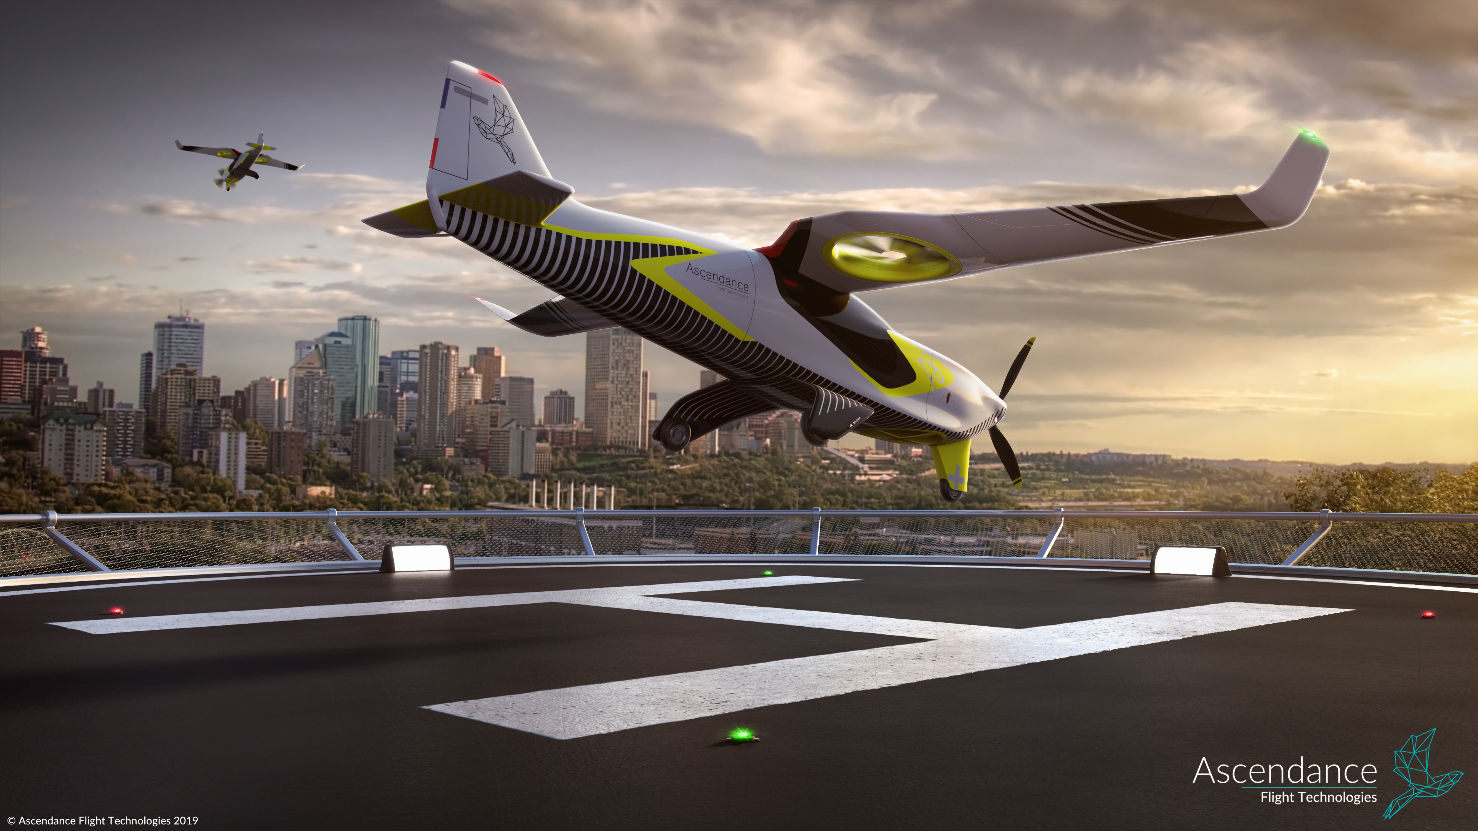 Ascendance Flight Technologies imagine un nouveau type de transport aérien